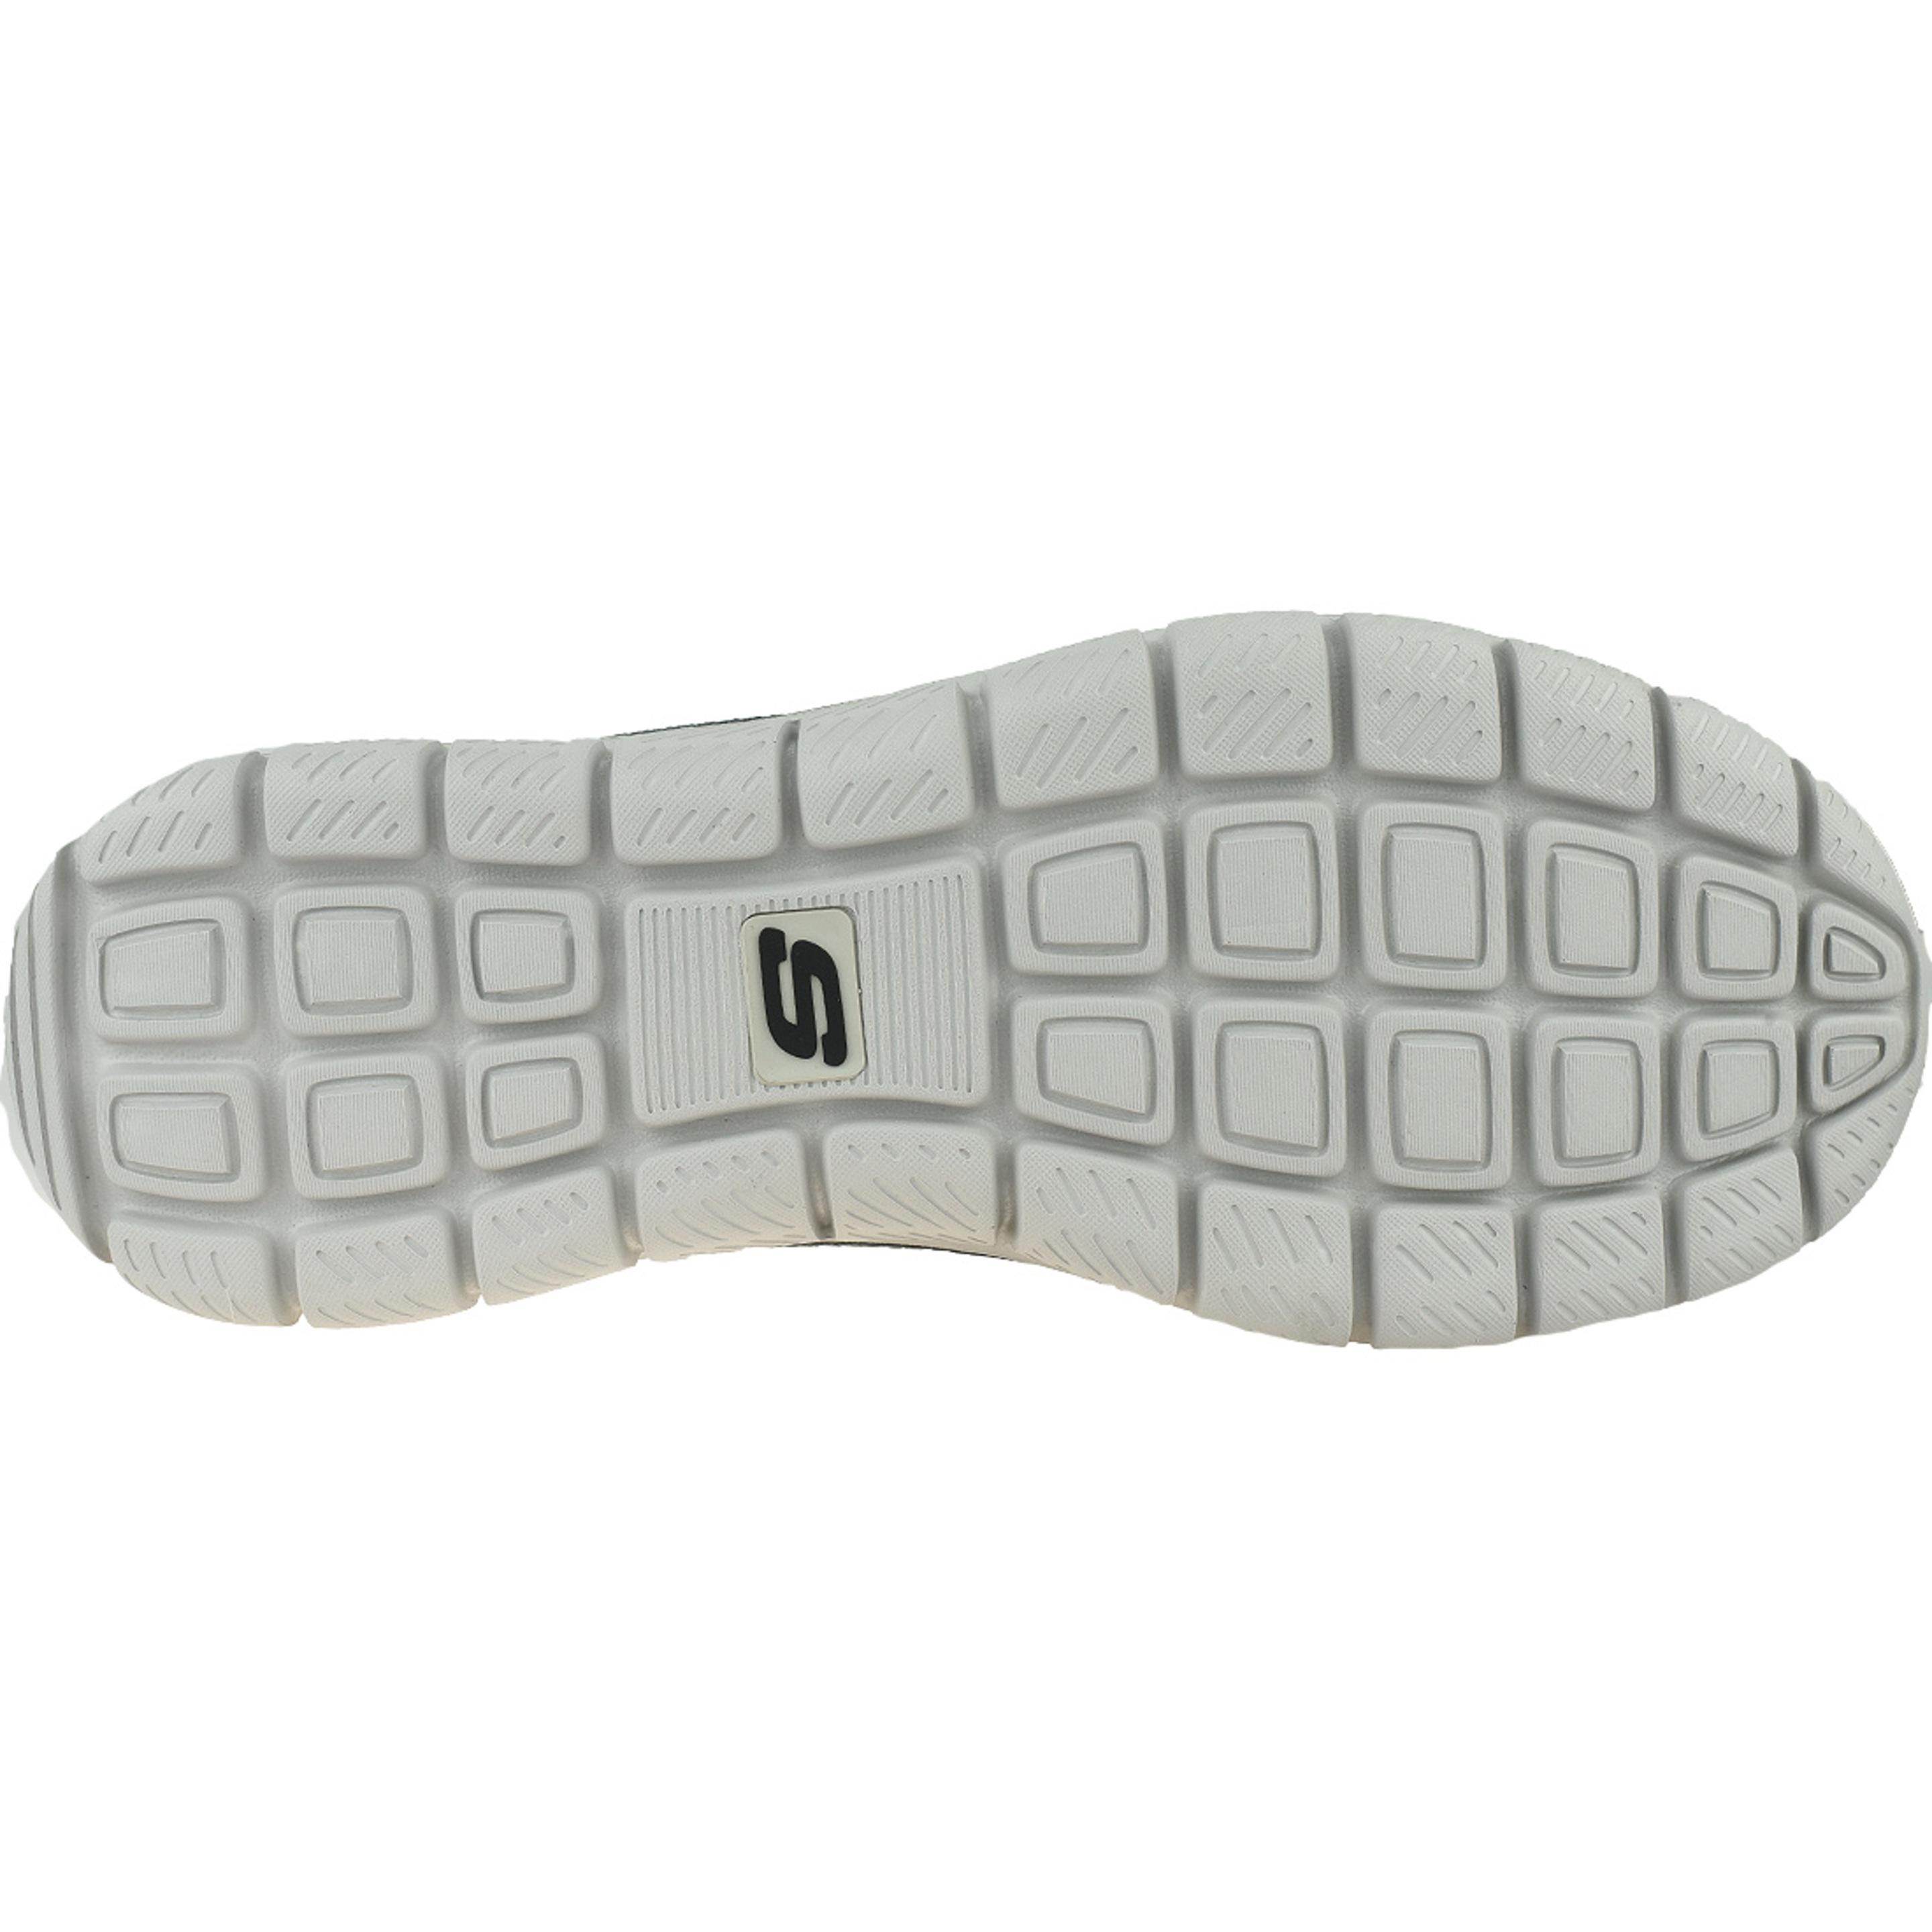 Zapatillas Skechers Track-bucolo 52630-cclm - gris - Hombres, Gris, Zapatos De Entrenamiento  MKP